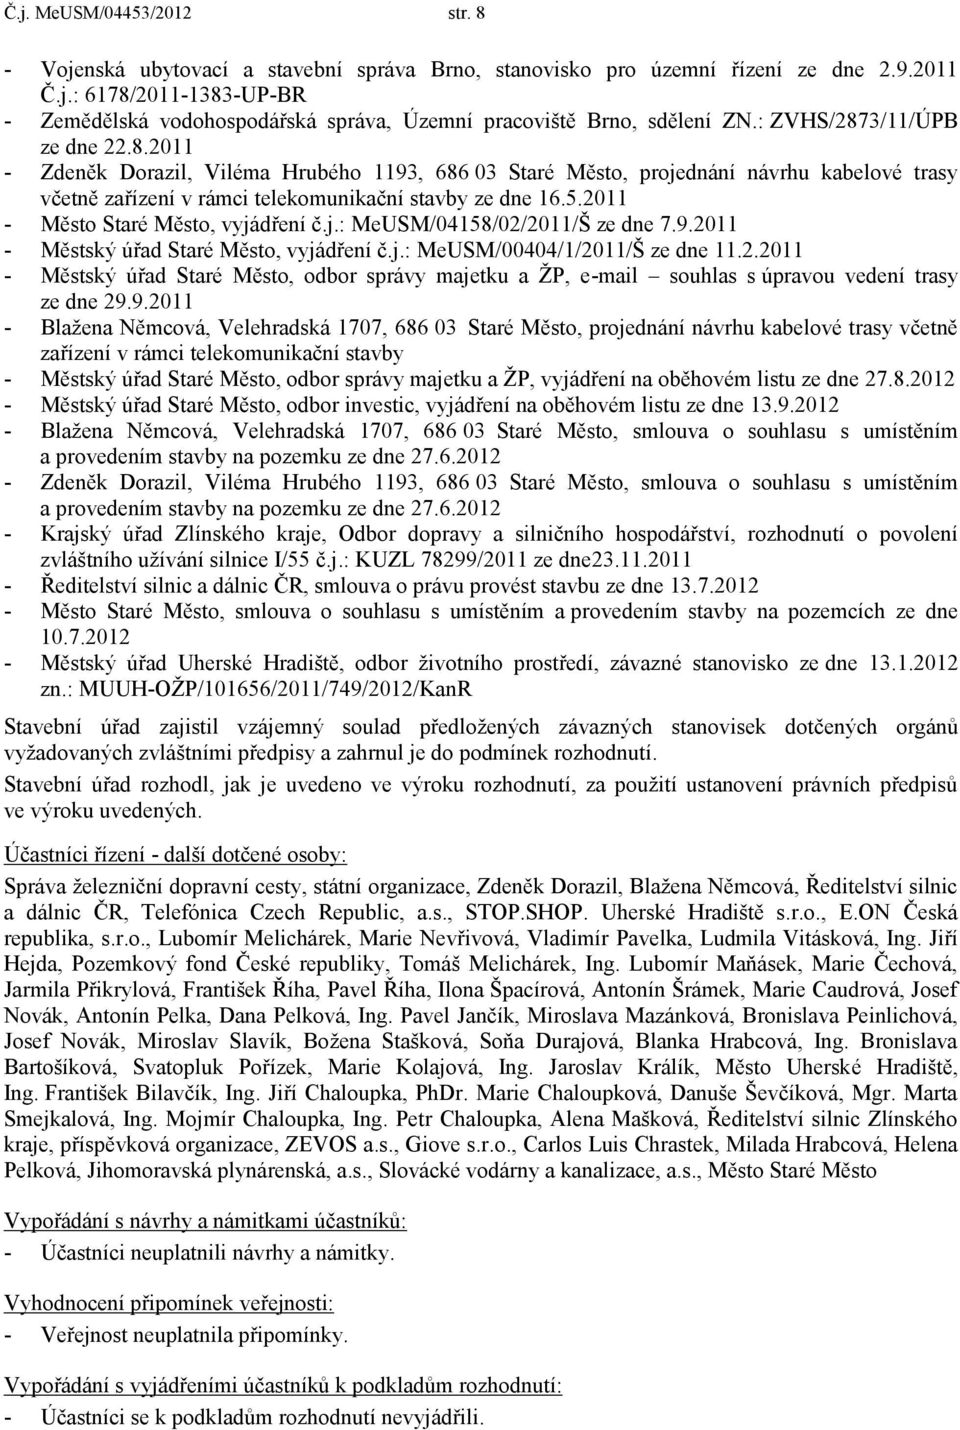 2011 - Měst Staré Měst, vyjádření č.j.: MeUSM/04158/02/2011/Š ze dne 7.9.2011 - Městský úřad Staré Měst, vyjádření č.j.: MeUSM/00404/1/2011/Š ze dne 11.2.2011 - Městský úřad Staré Měst, dbr správy majetku a ŽP, e-mail suhlas s úpravu vedení trasy ze dne 29.